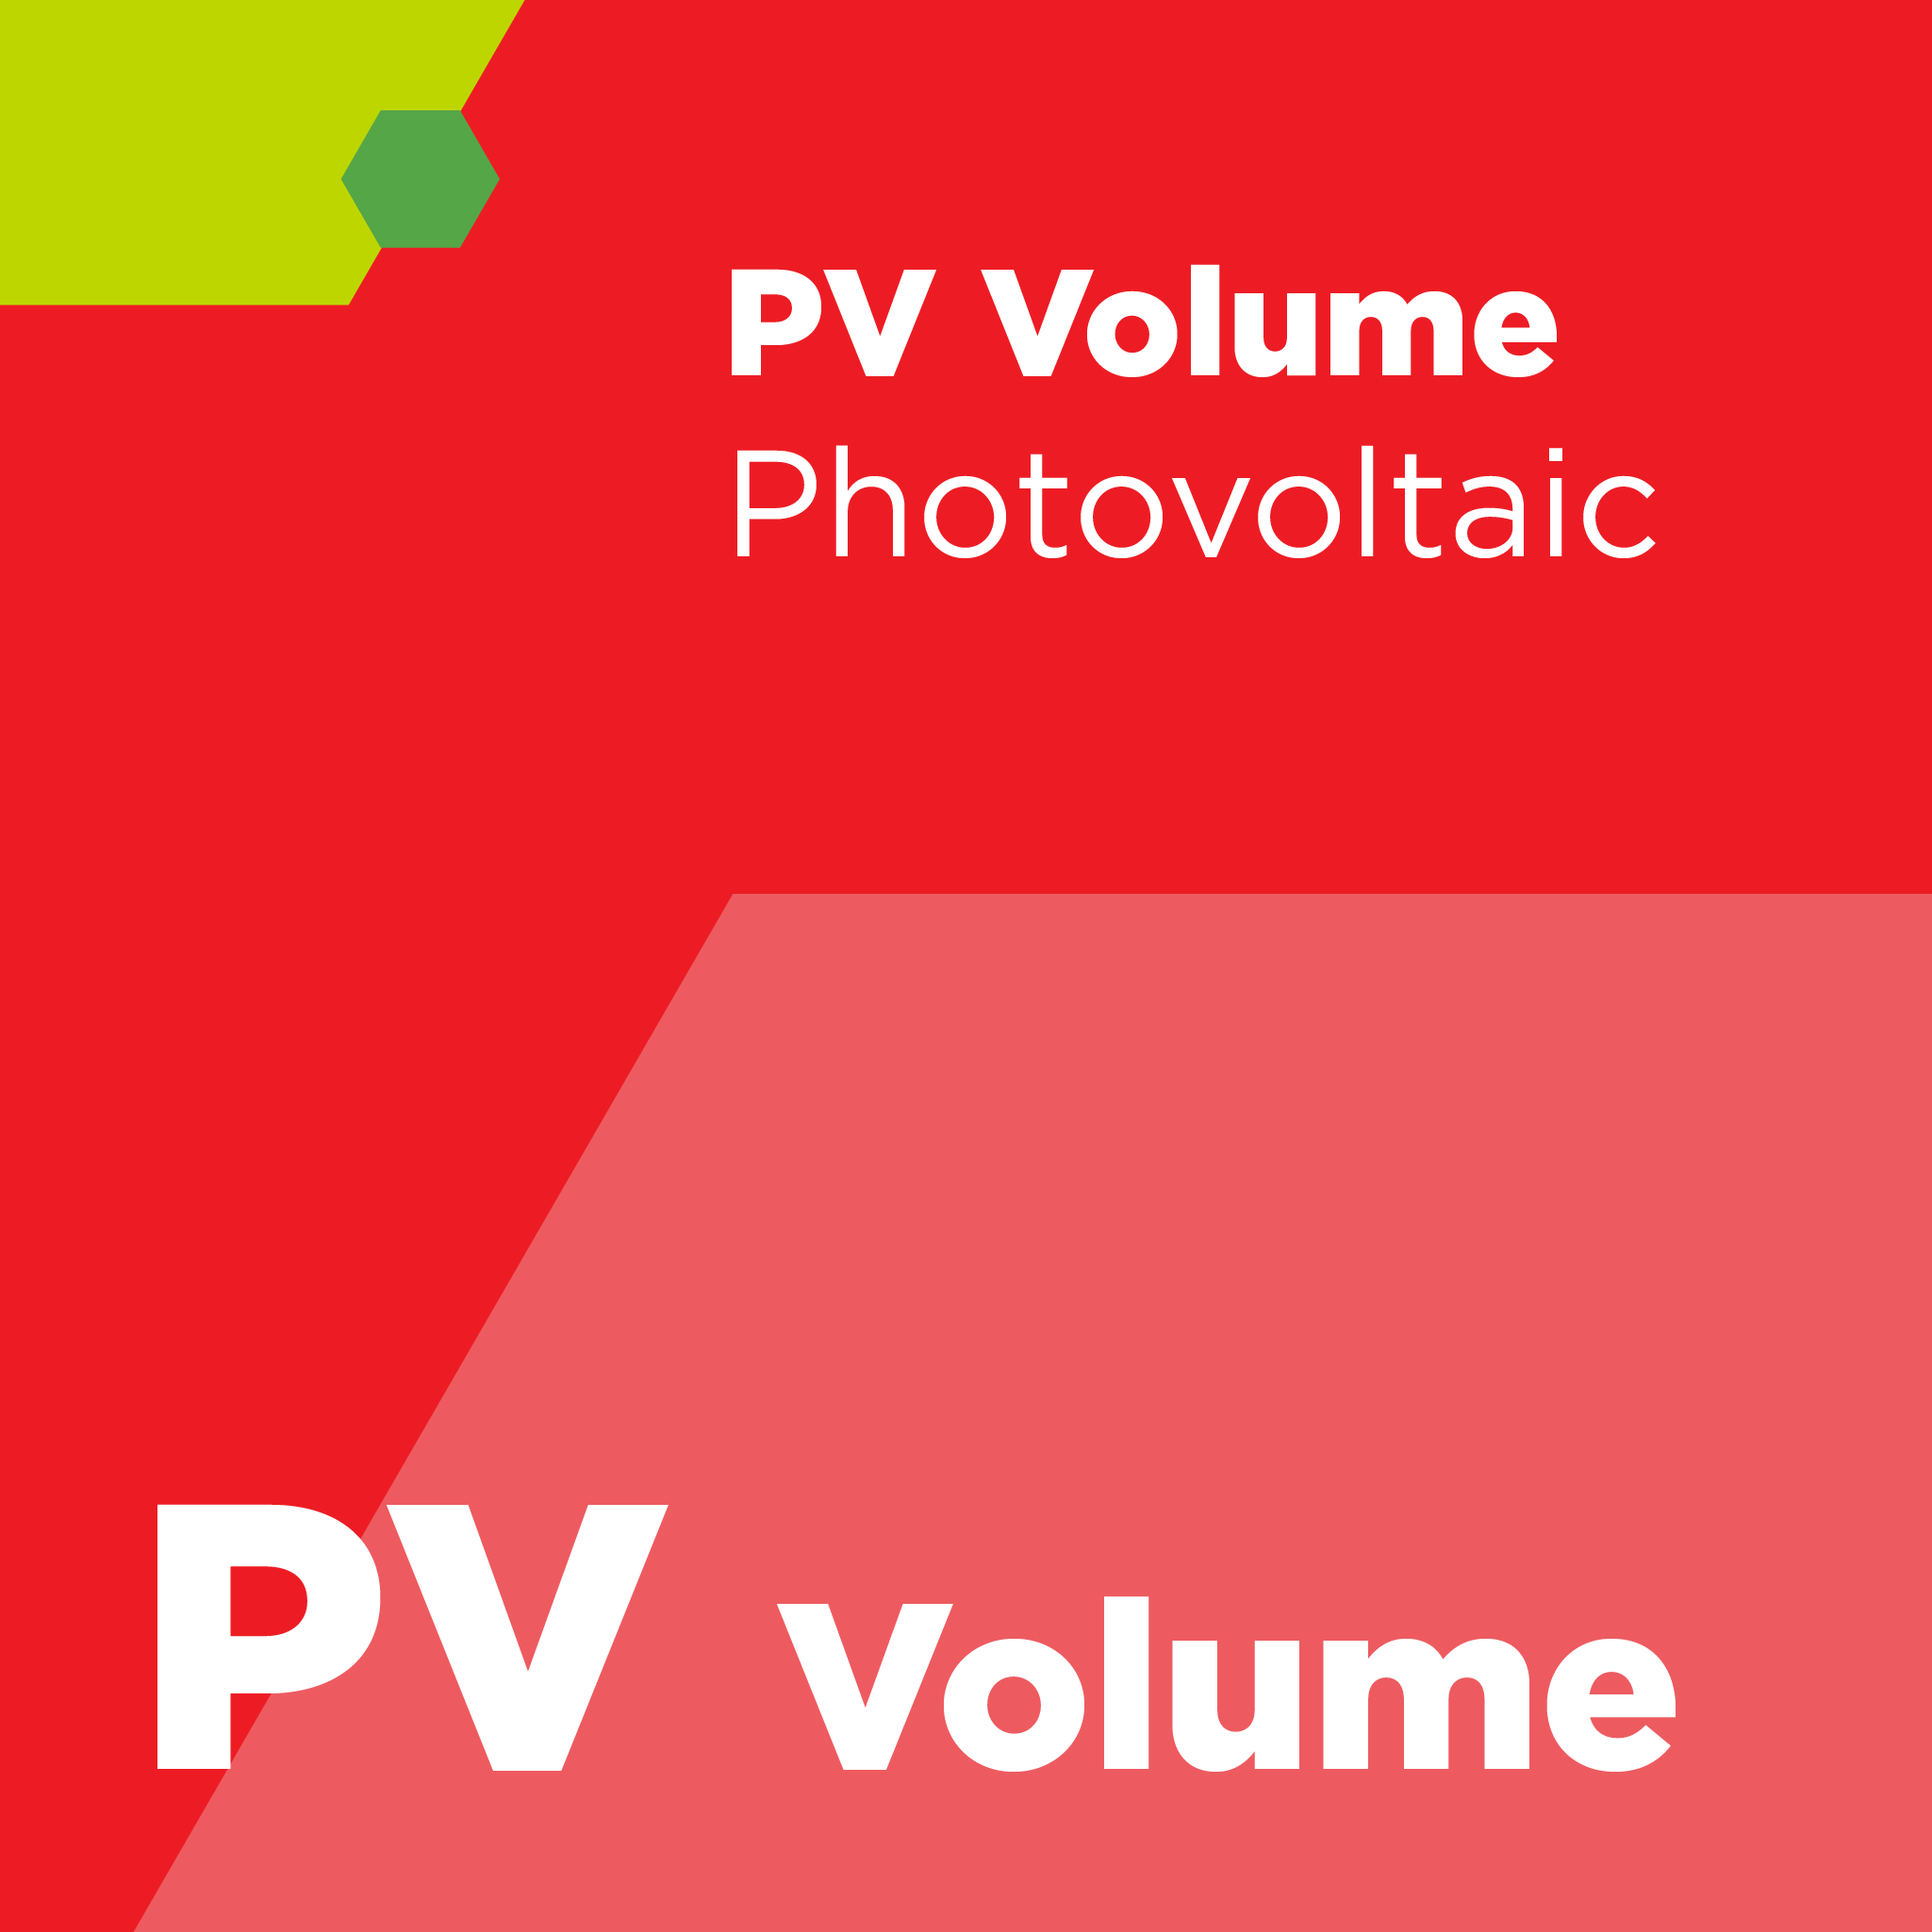 PV00100 - SEMI PV1 - 高分解能グロー放電質量分析を用いたシリコン太陽電池用シリコン原料中の微量元素測定に関するテスト方法